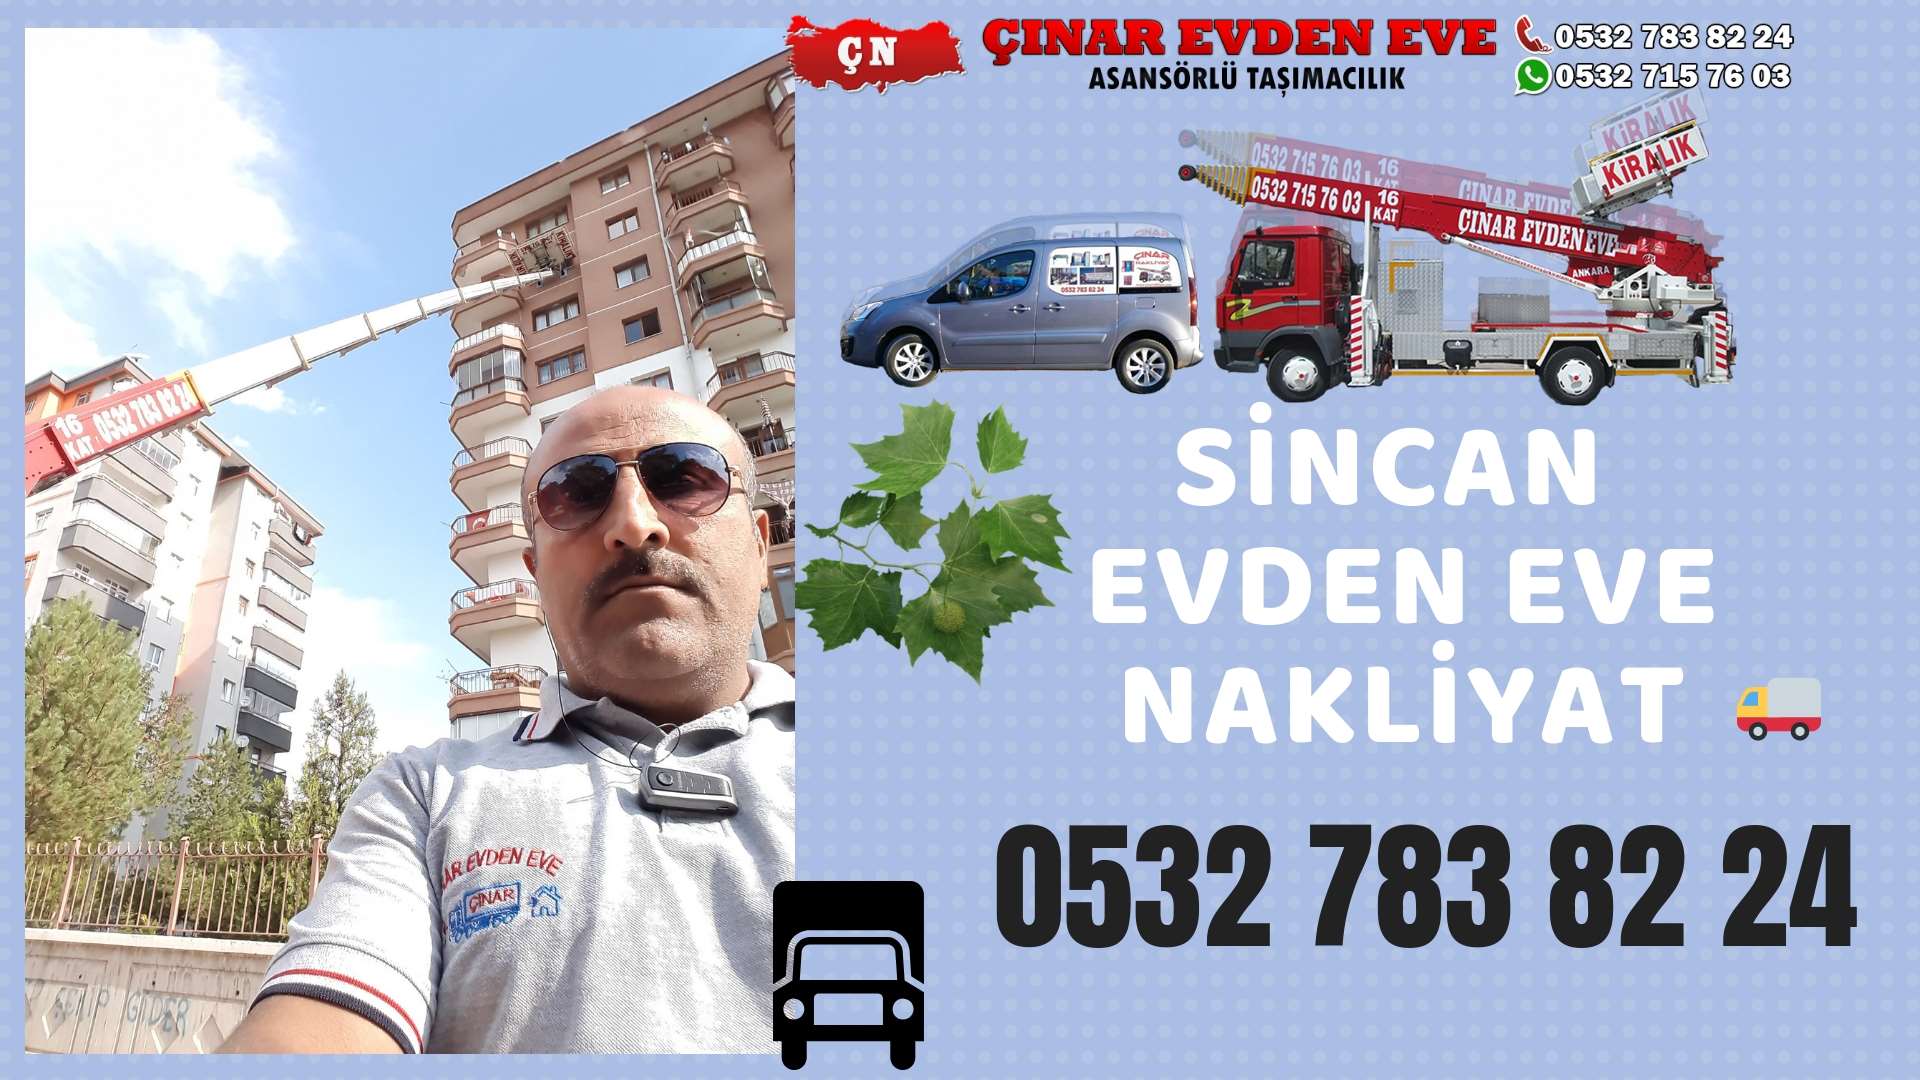 Ankara Ostim Evden Eve Nakliyat, Asansörlü Taşımacılık, Ofis / İş Yeri Taşıma 0532 715 76 03